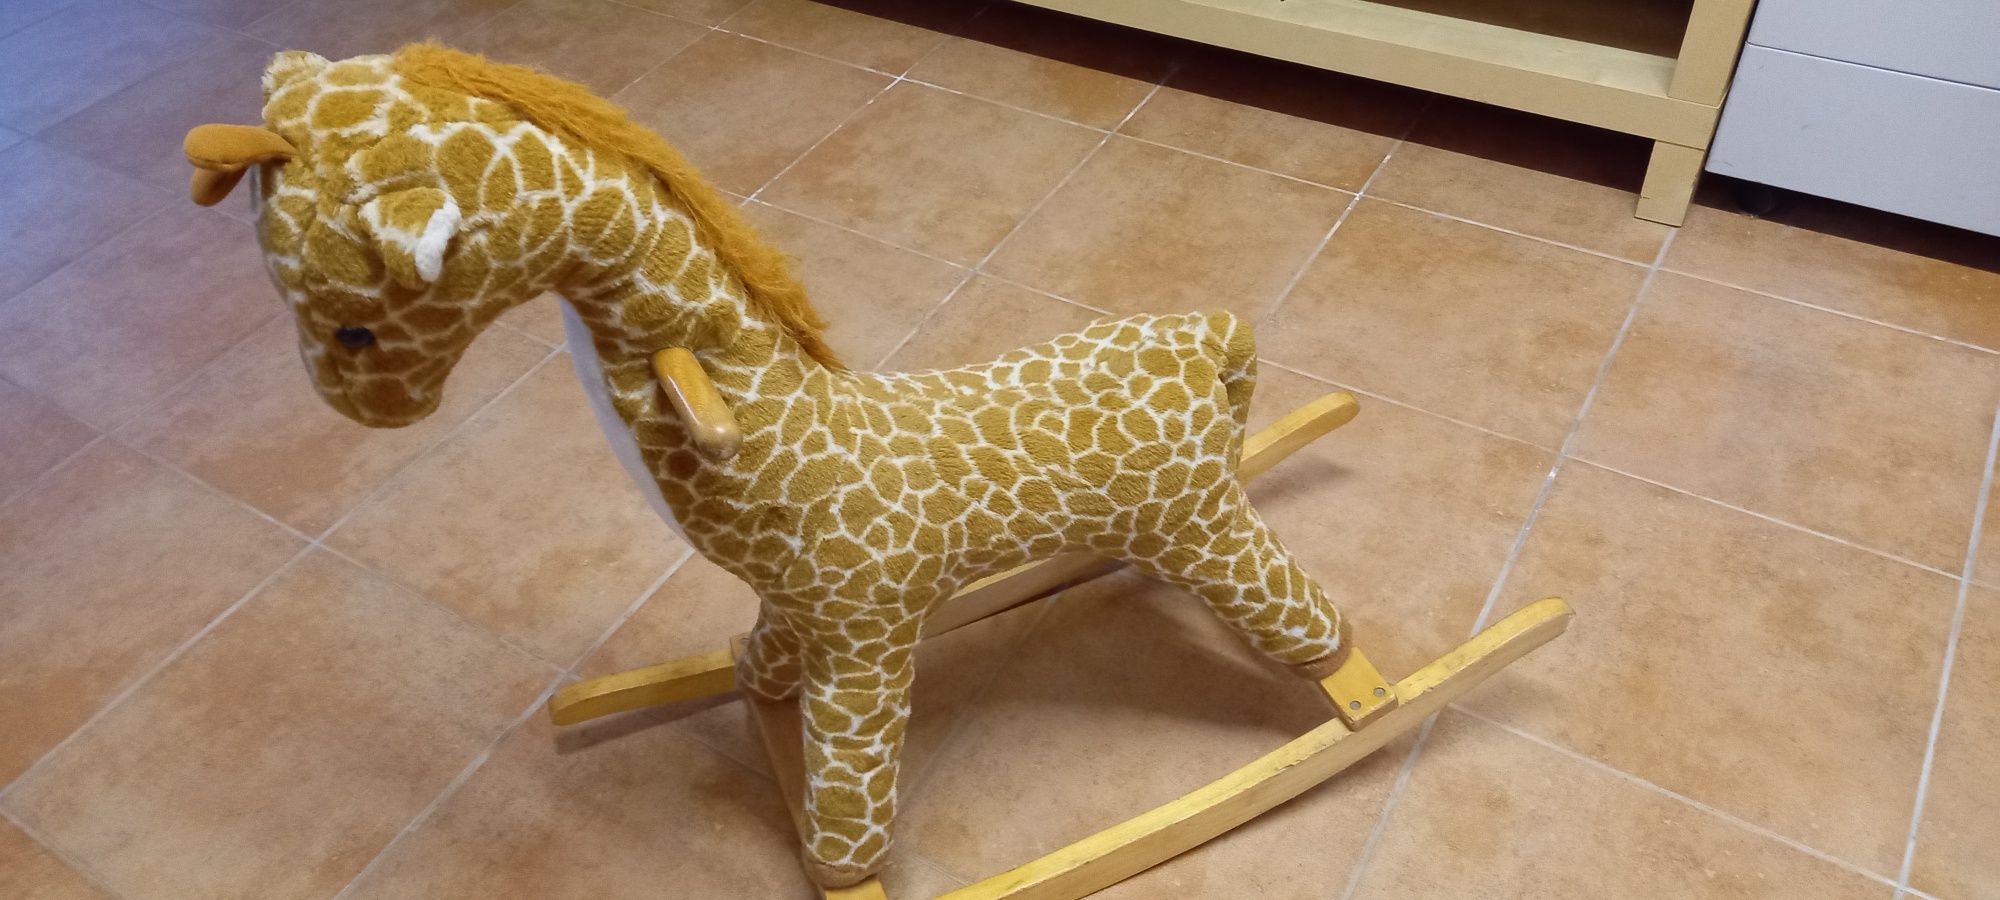 Girafa de Baloiço